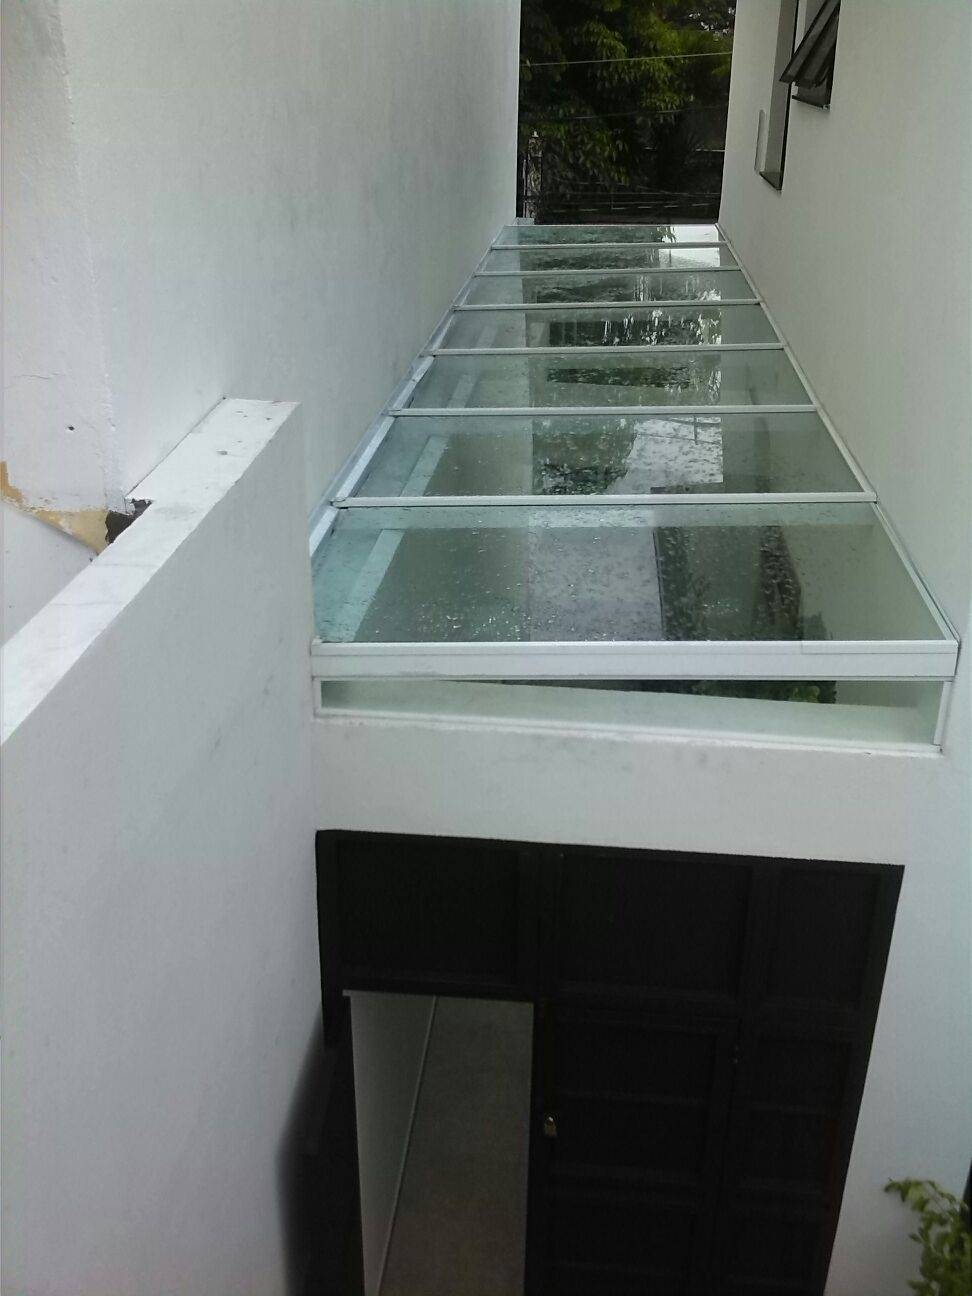 Cobertura de Vidro Temperado Preço em Ermelino Matarazzo - Cobertura de Vidro em São Mateus